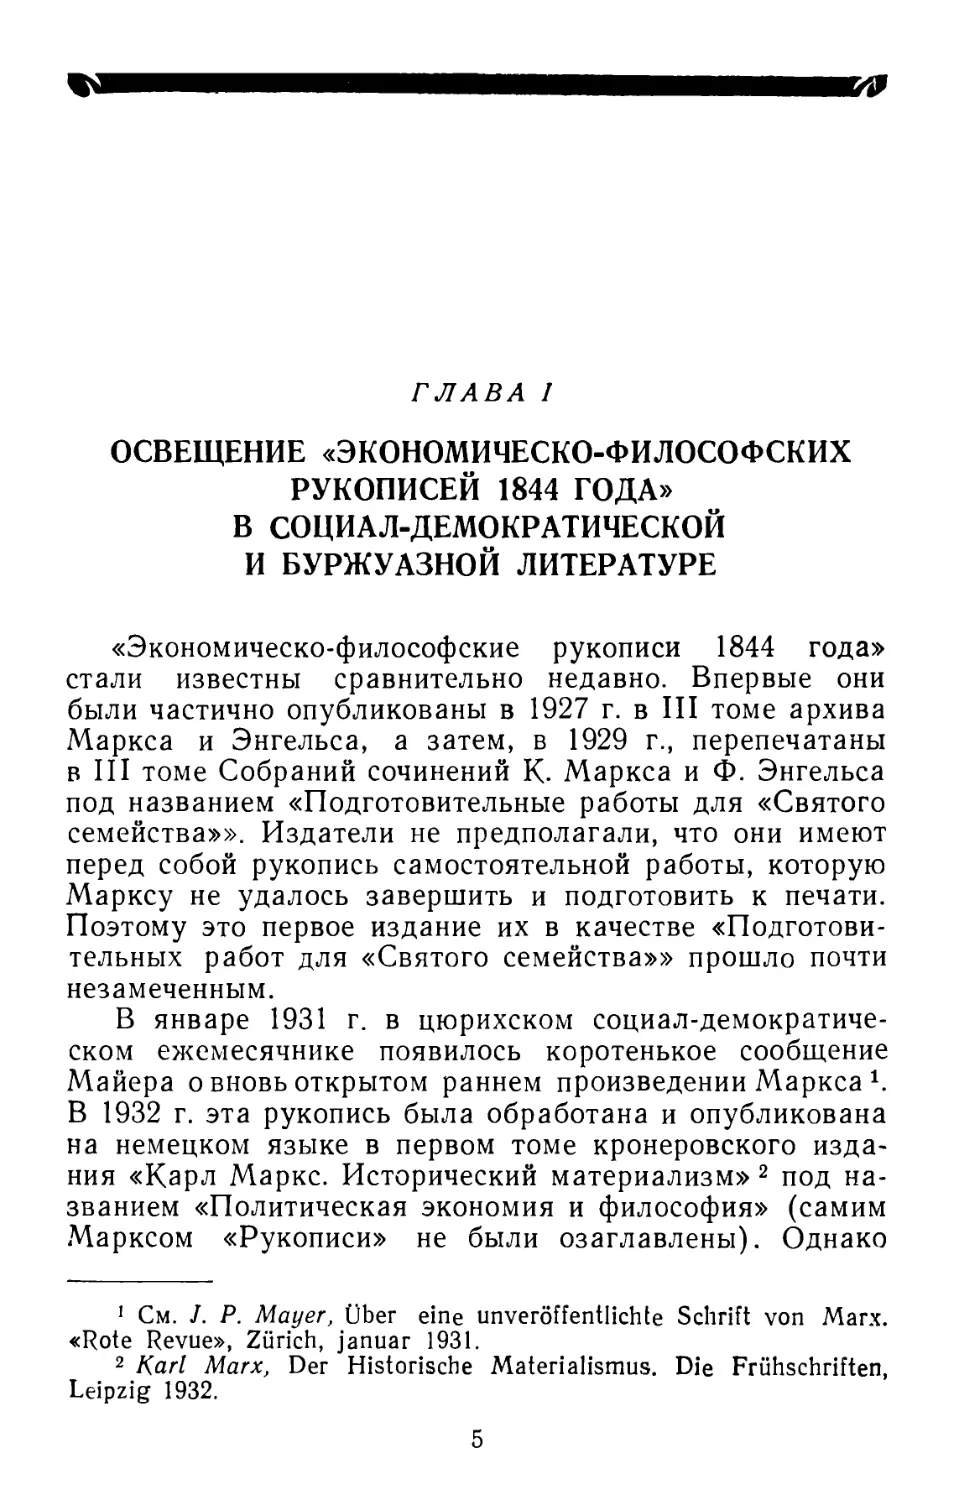 Глава I. Освещение «Экономическо-философских рукописей 1844 года» в социал-демократической и буржуазной литературе